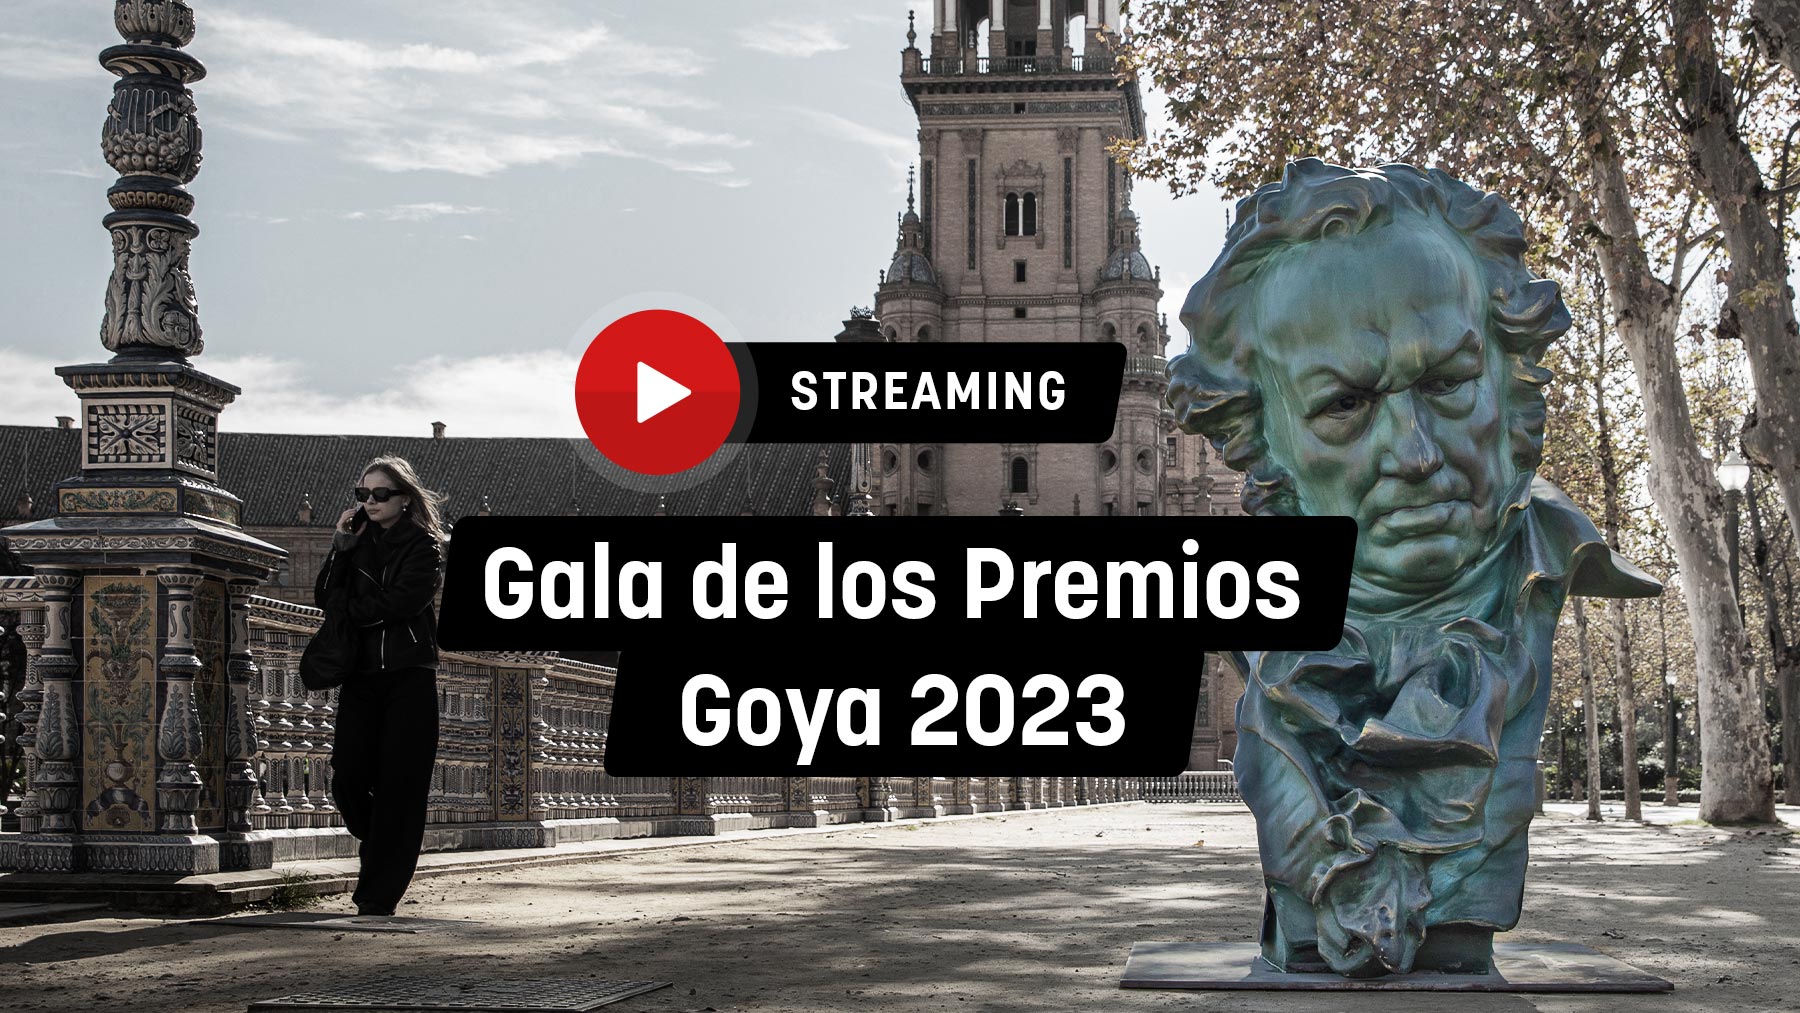 Gala de los Premios Goya 2023, streaming en directo